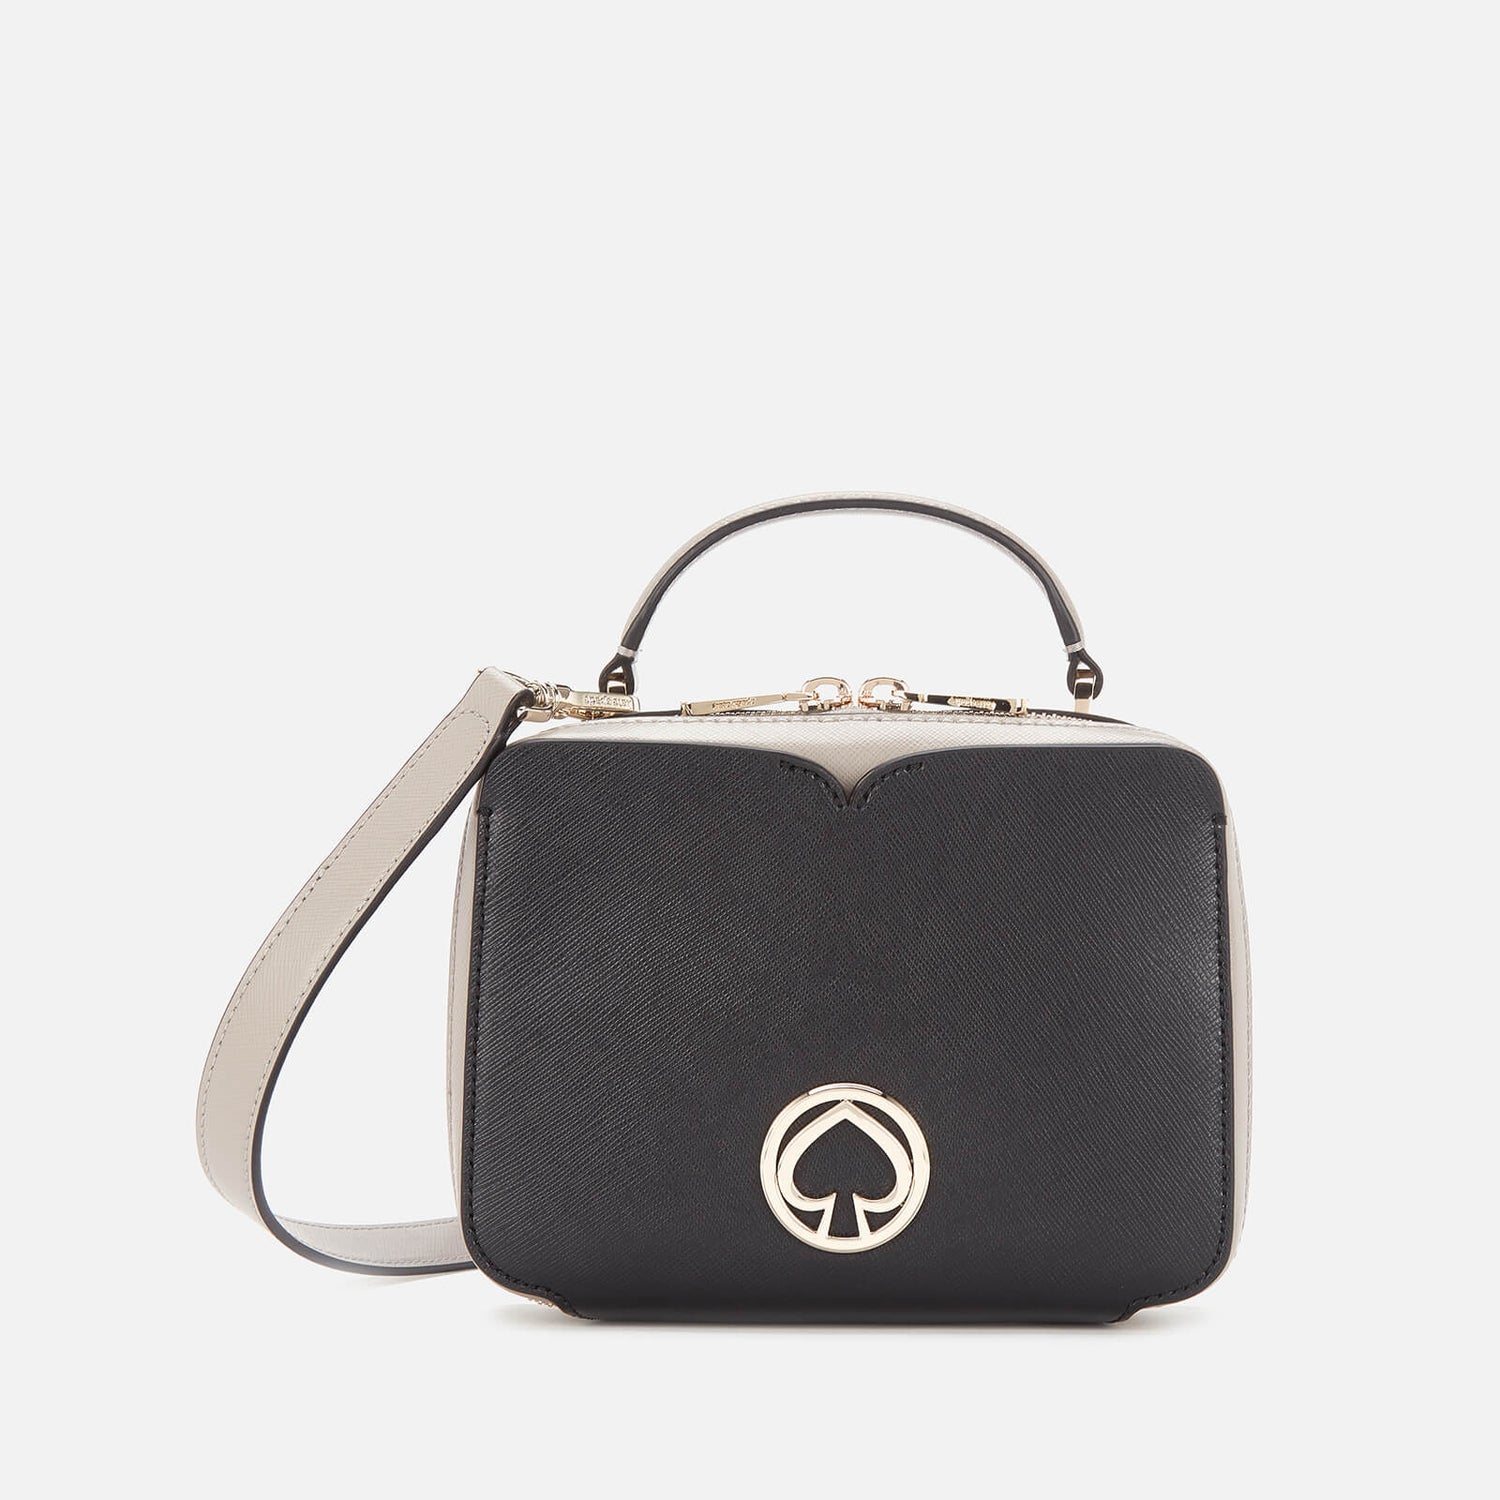 Kate Spade New York Women's Vanity Mini Top Handle Bag - Black Multi